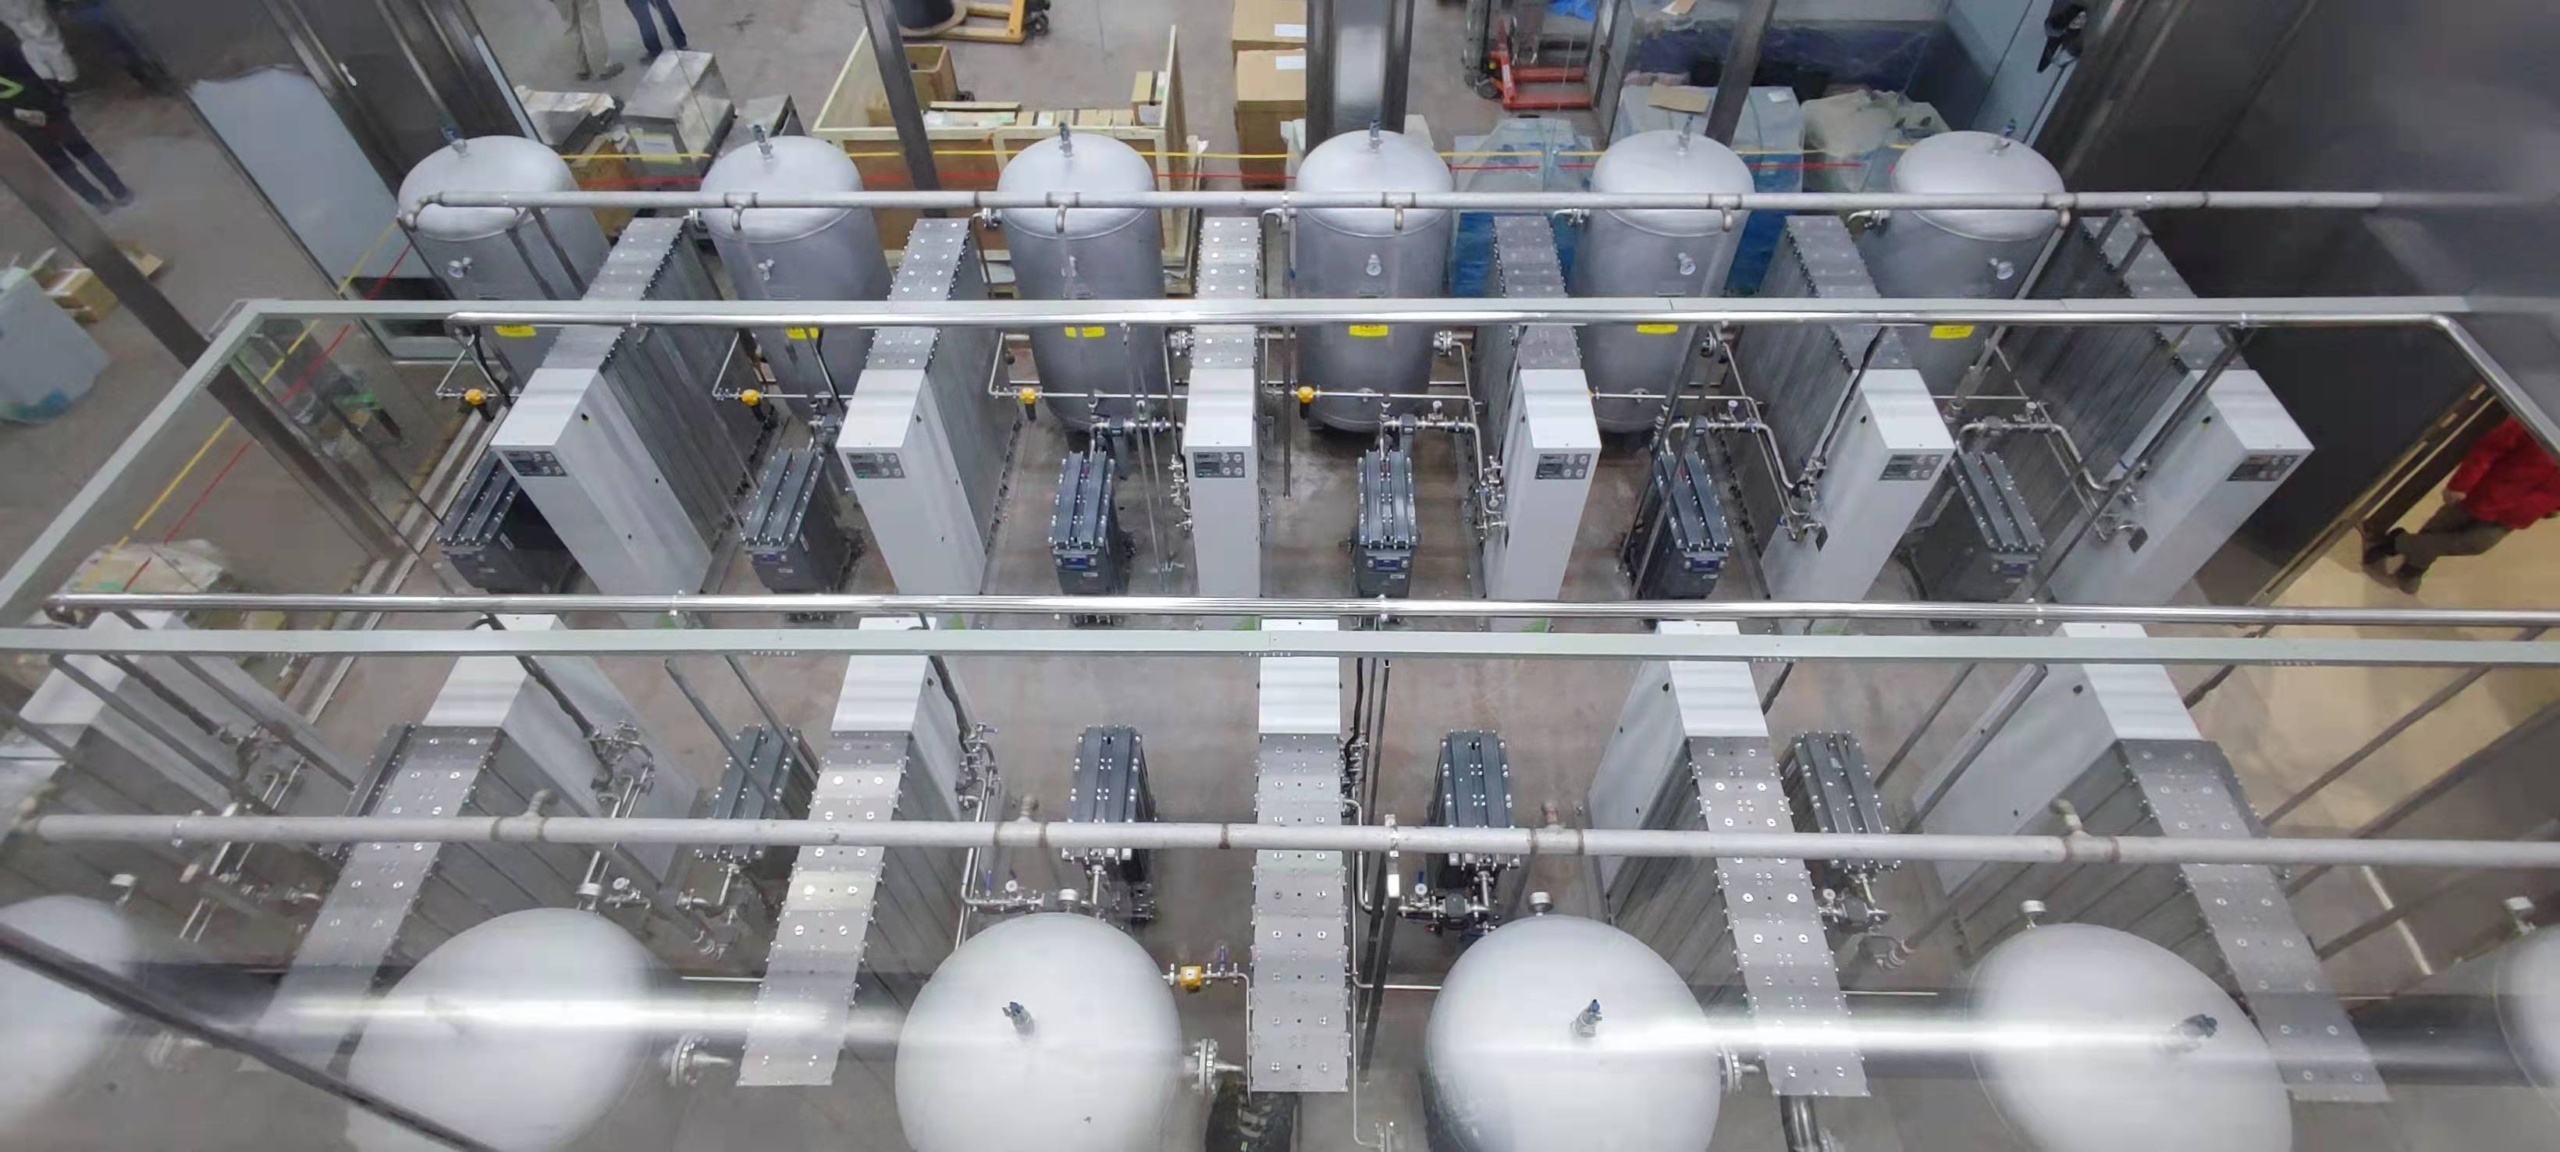 A nitrogen gas generation system.